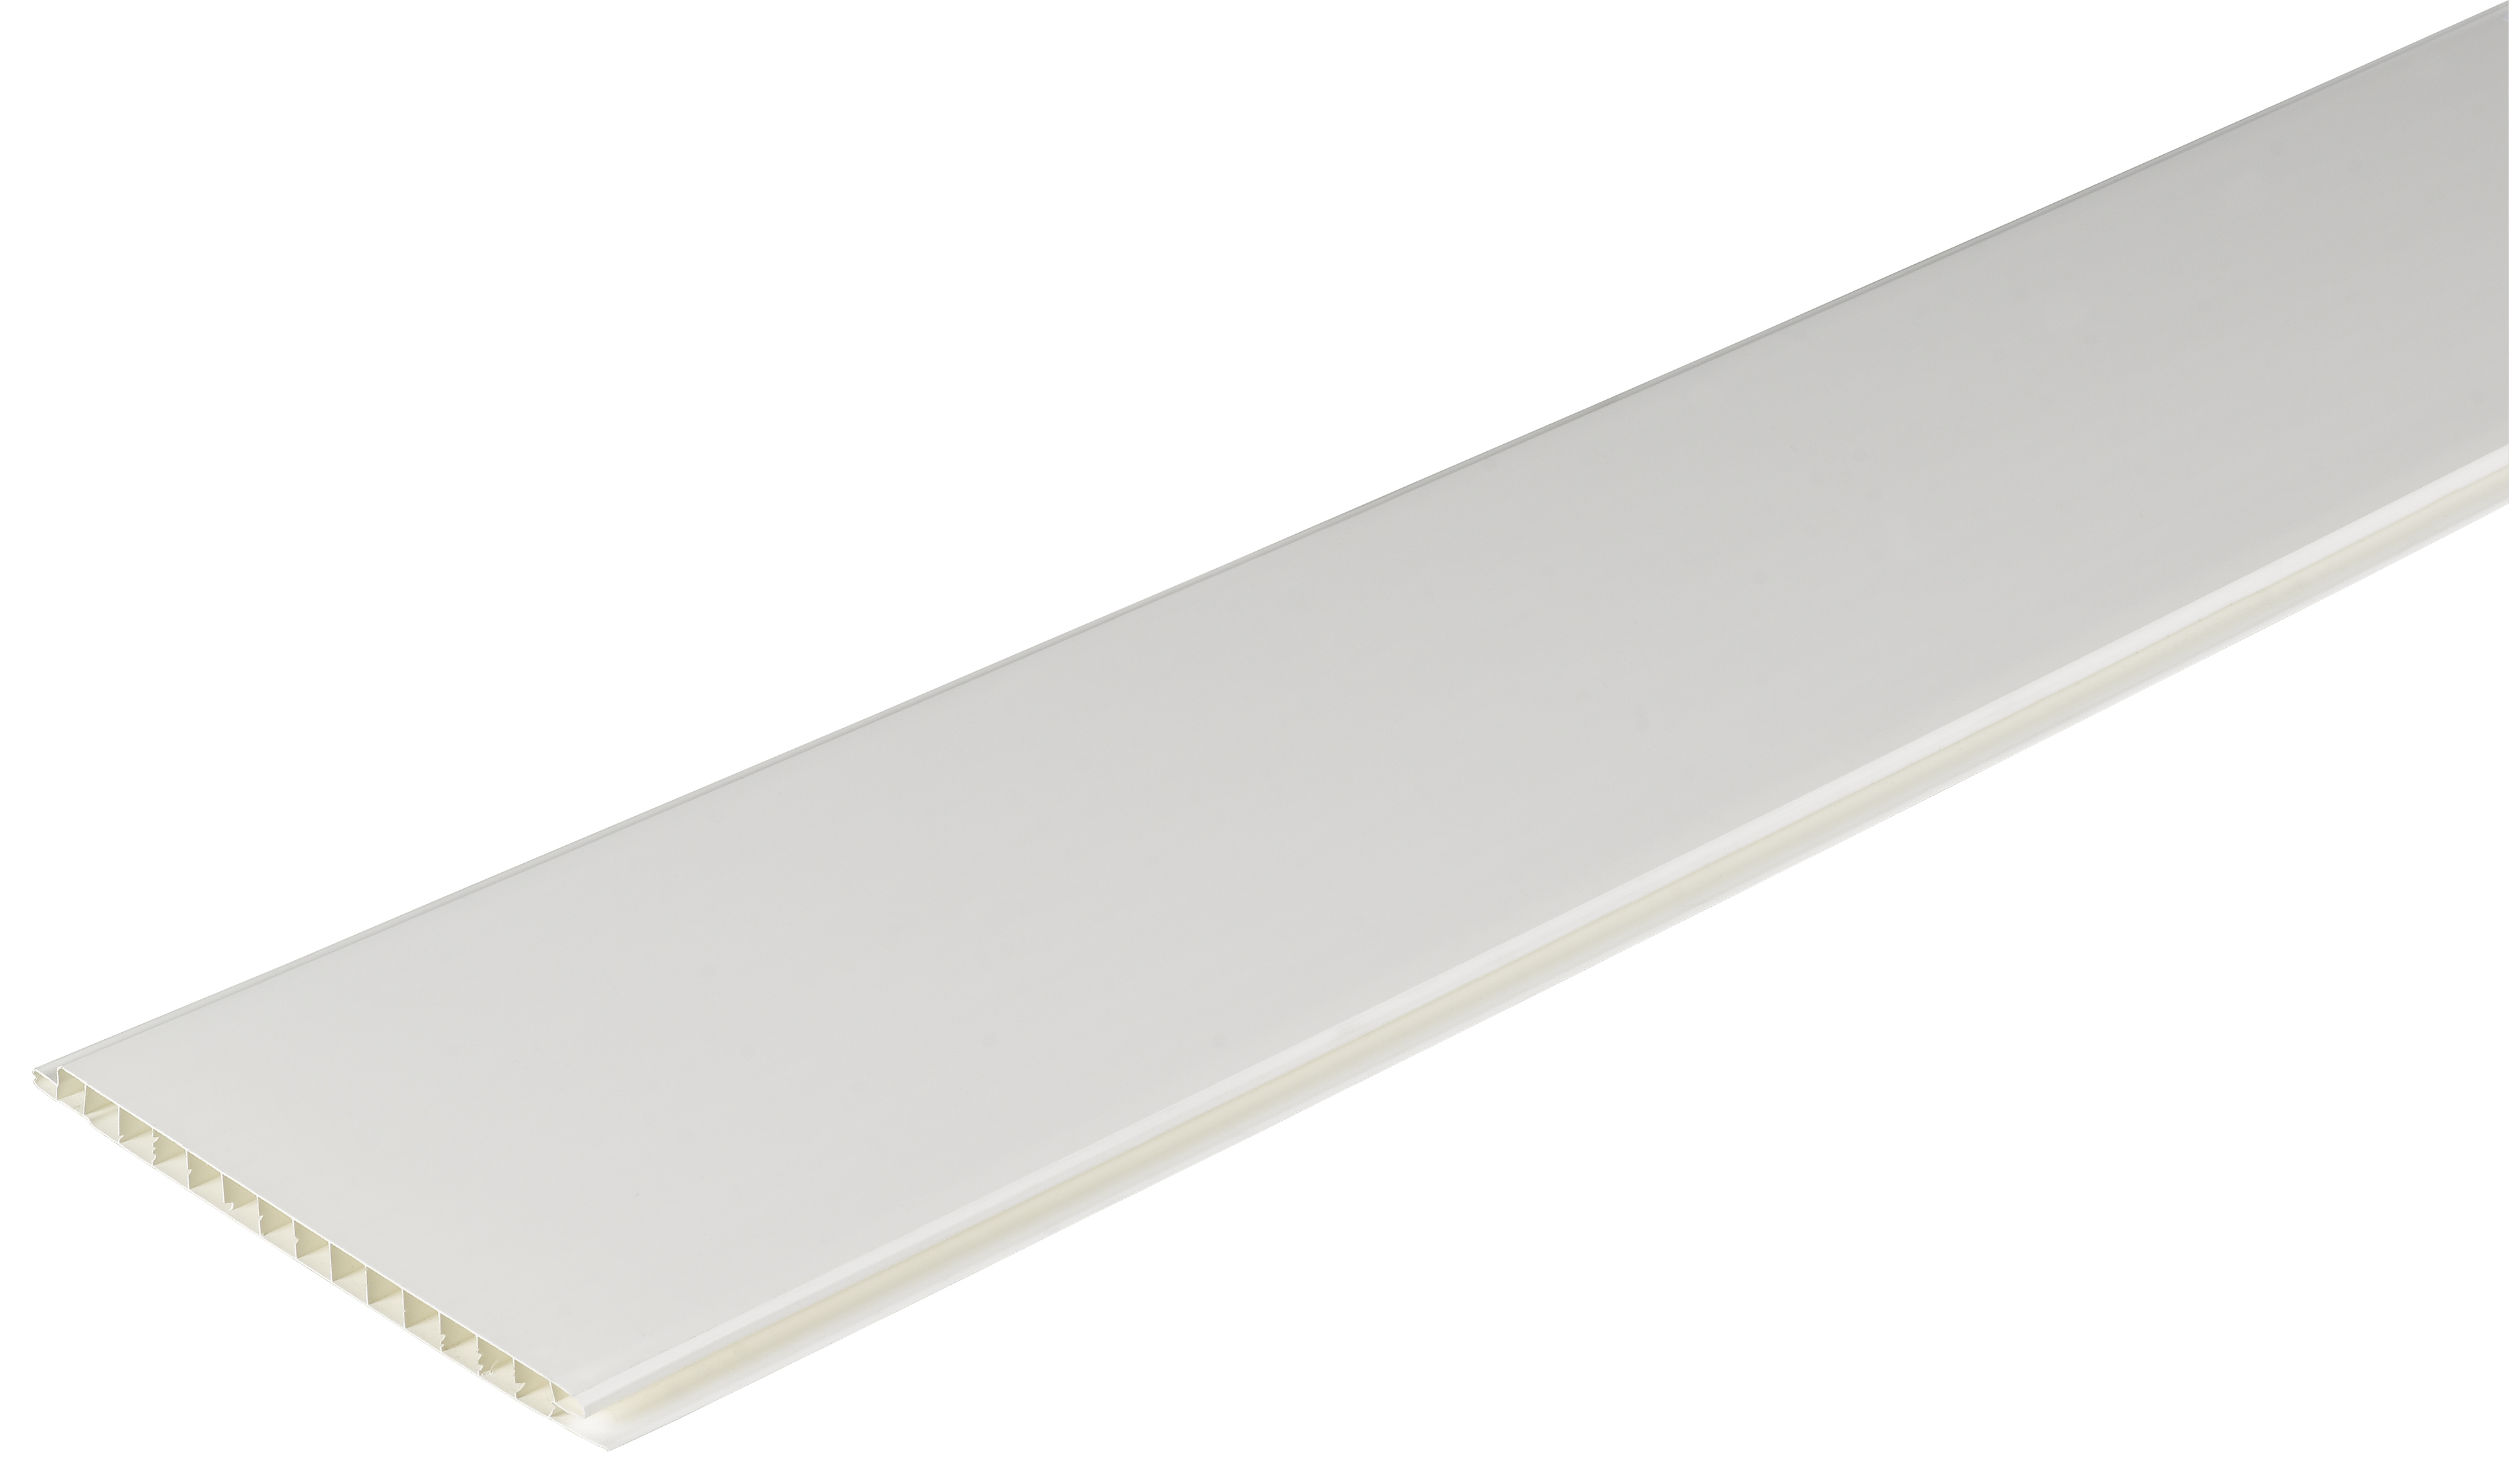 Wickes PVCu White Interior Cladding - 167 x 2500mm